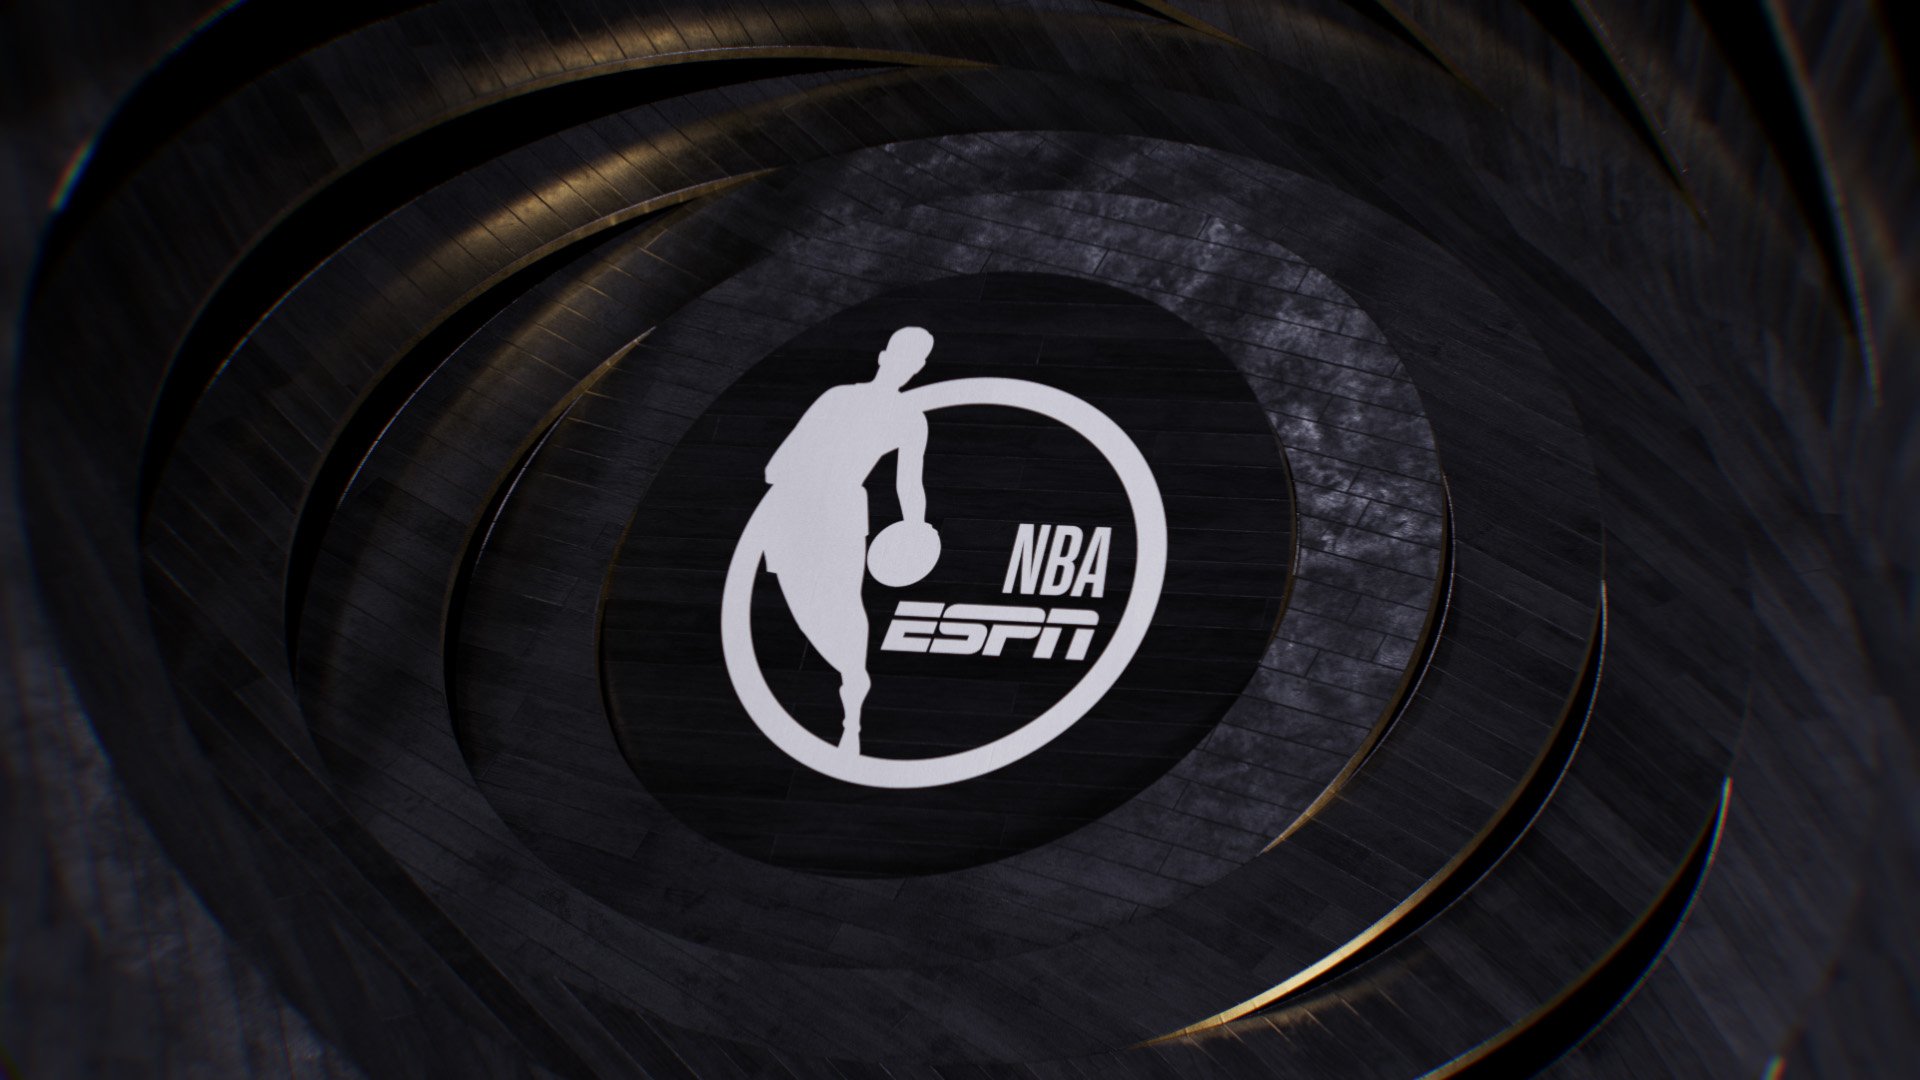 ESPN_NBA_Finals23_Design_B_RM_001_00001.jpg